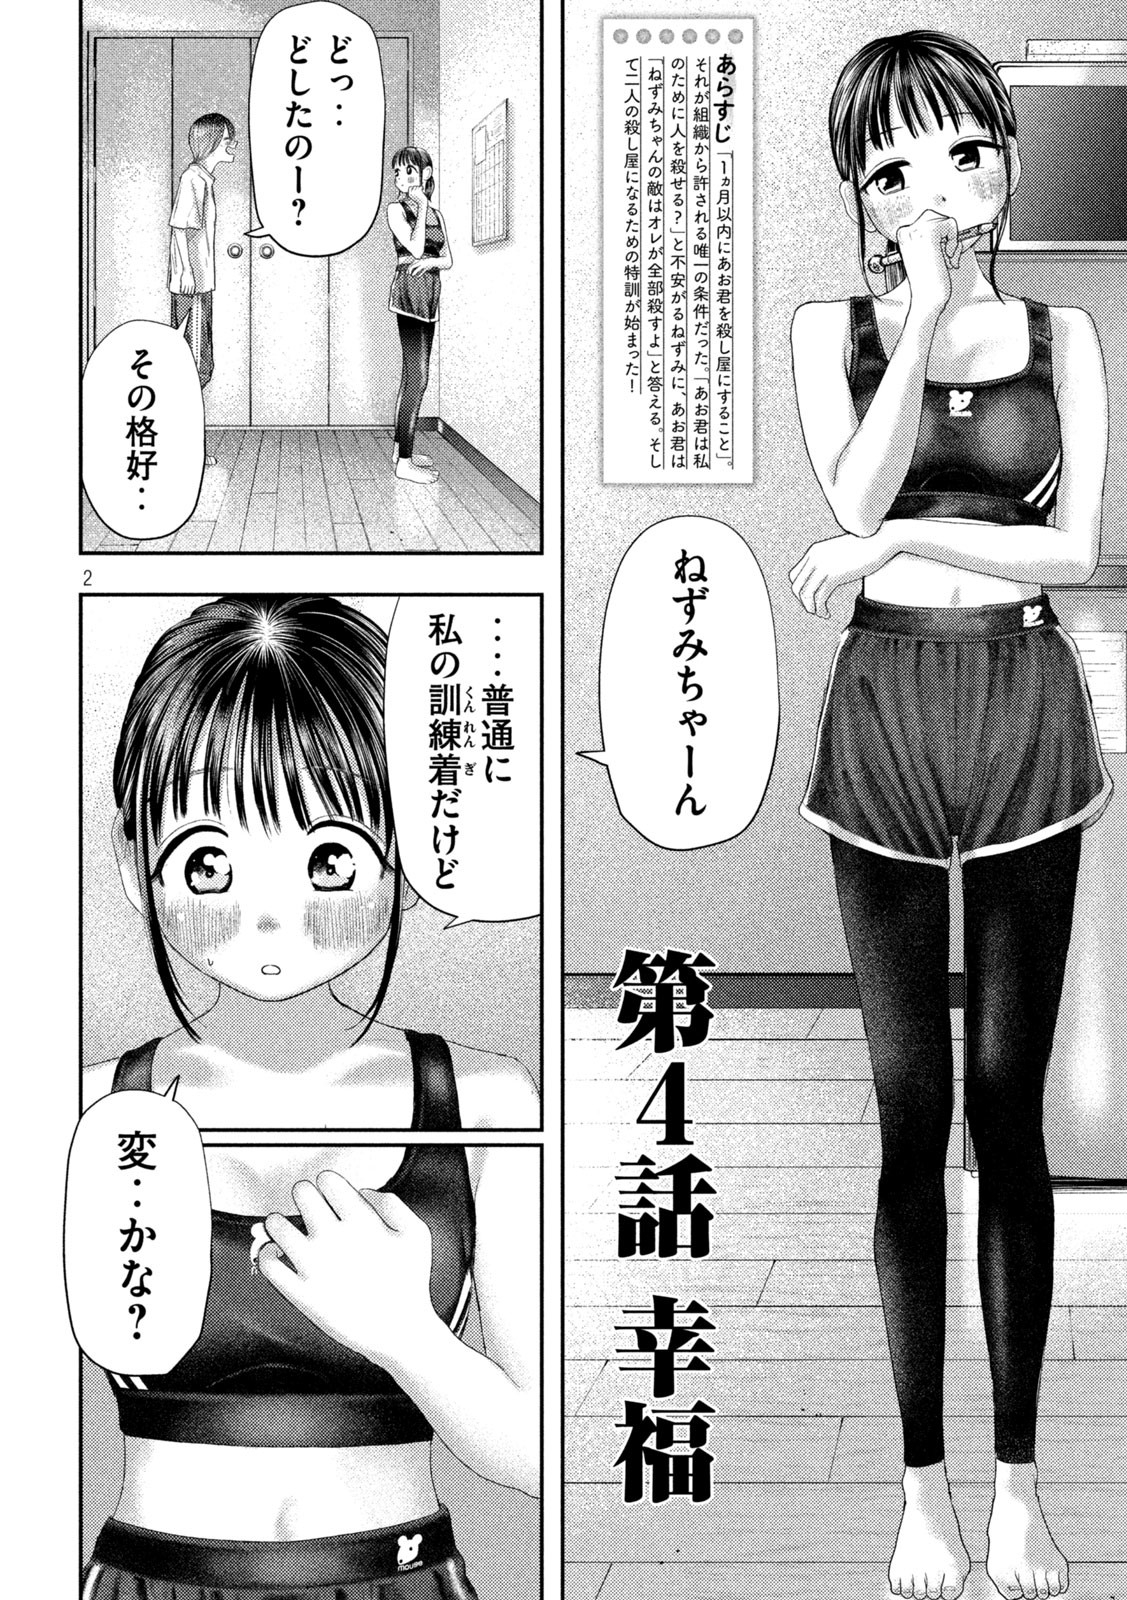 Nezumi no Koi - Chapter 4 - Page 2